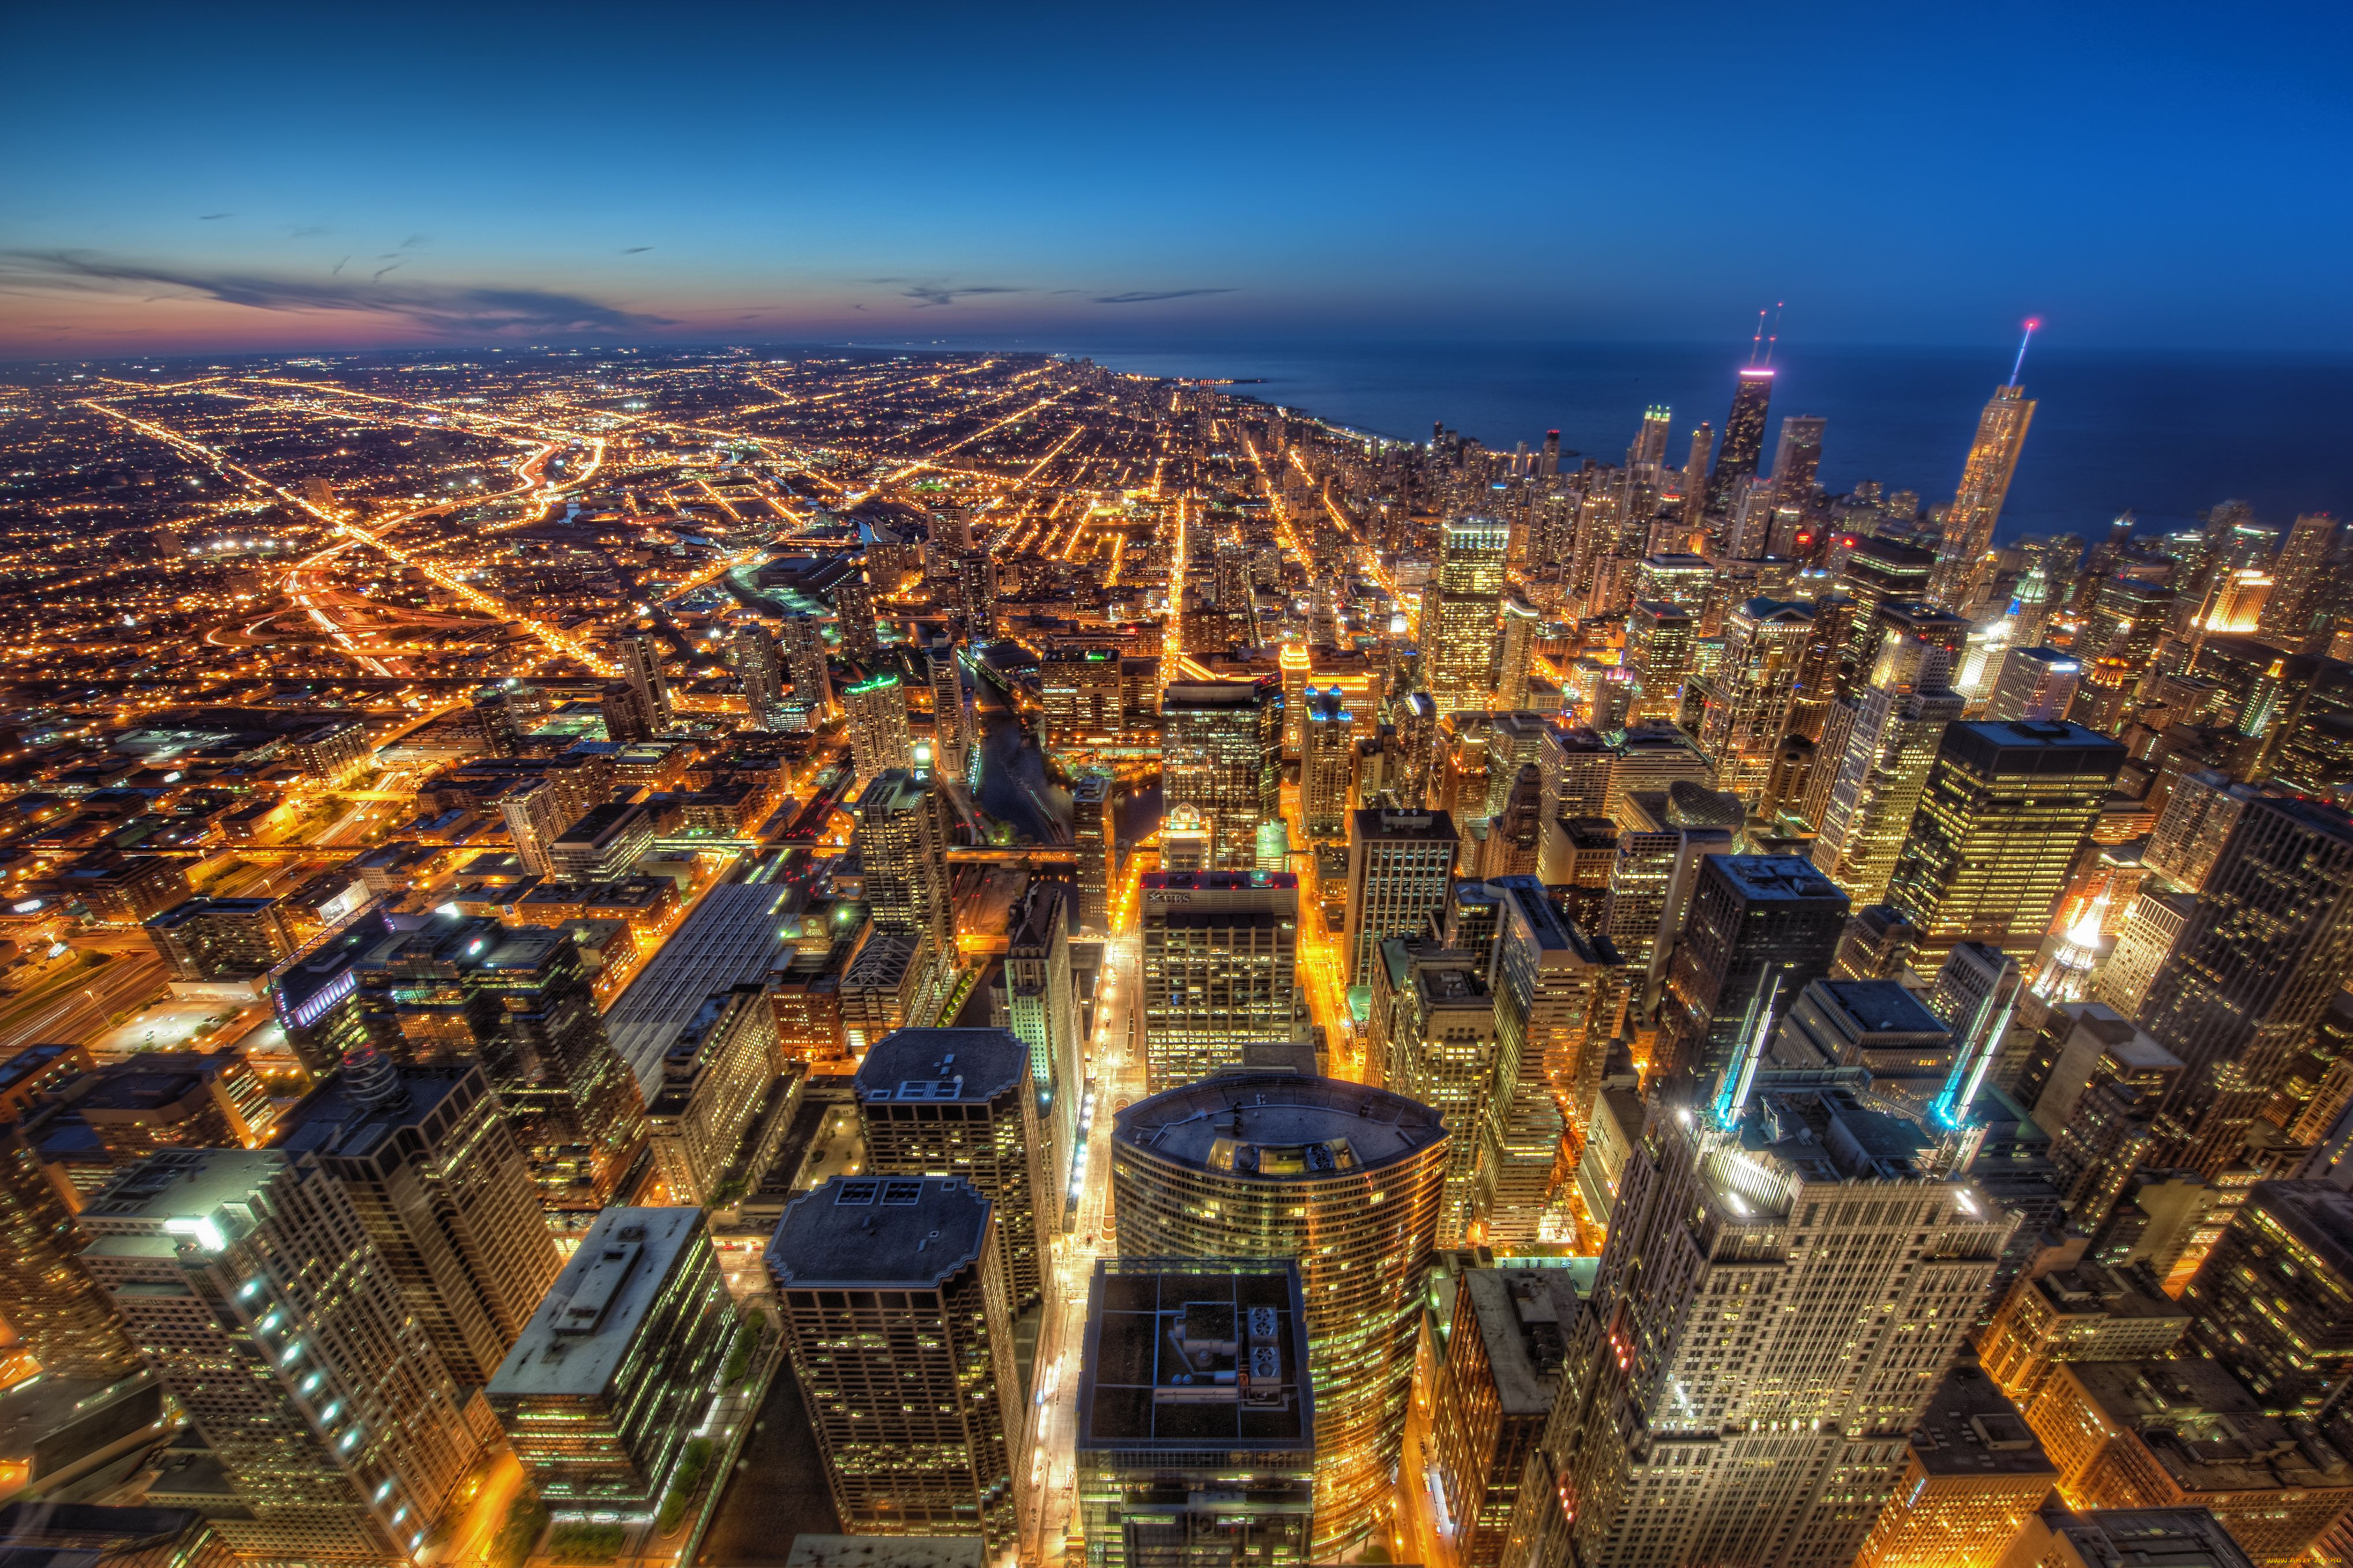 Обои Chicago Города Чикаго (США), обои для рабочего стола, фотографии  chicago, города, Чикаго, сша, здания, небоскрёбы, огни, ночной, город Обои  для рабочего стола, скачать обои картинки заставки на рабочий стол.